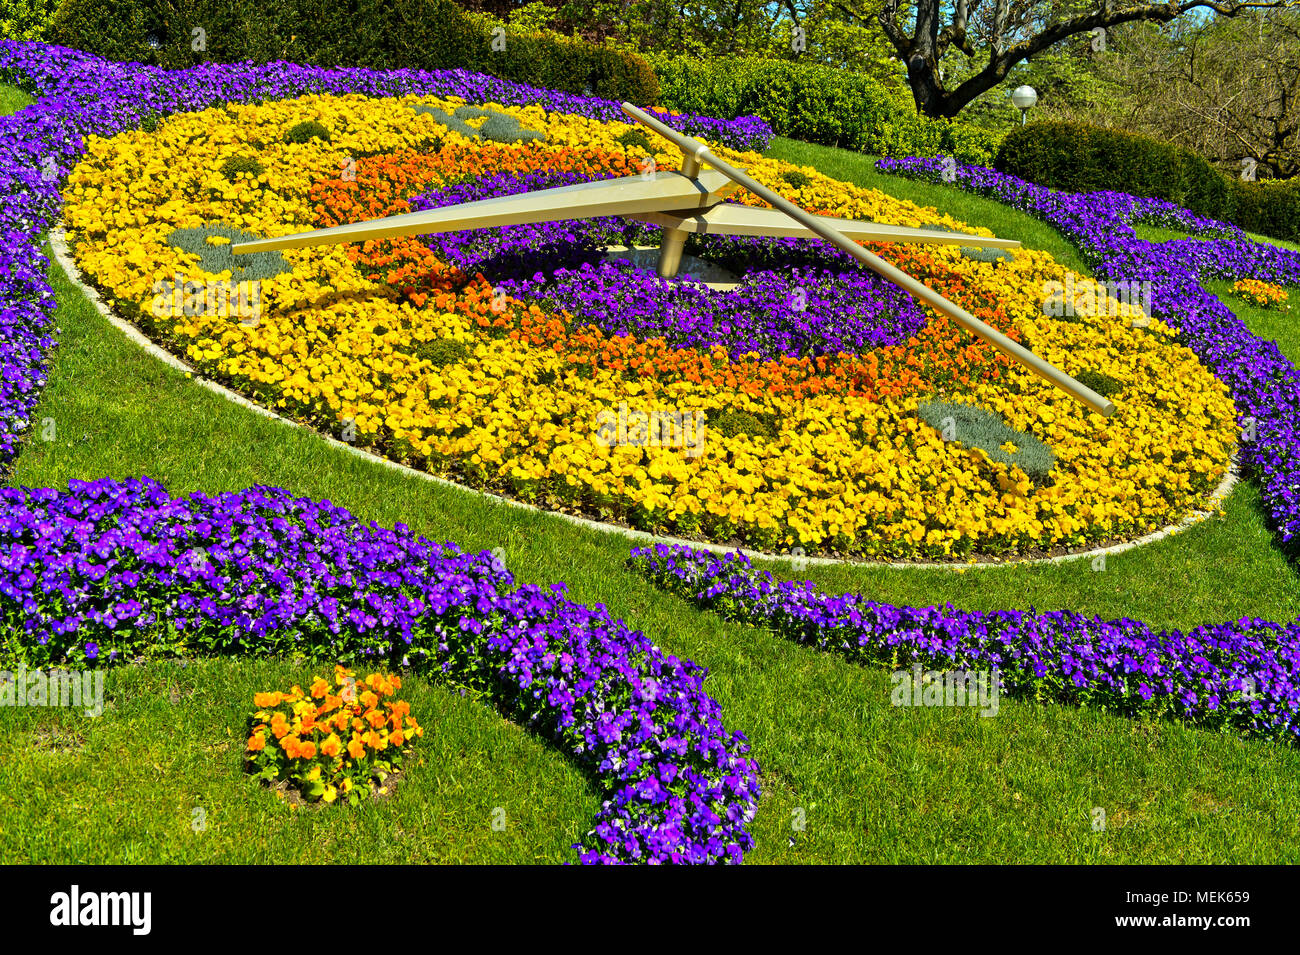 Blumenuhr, l'horloge fleurie, im Park Jardin Anglais, Genf, Schweiz  Stockfotografie - Alamy